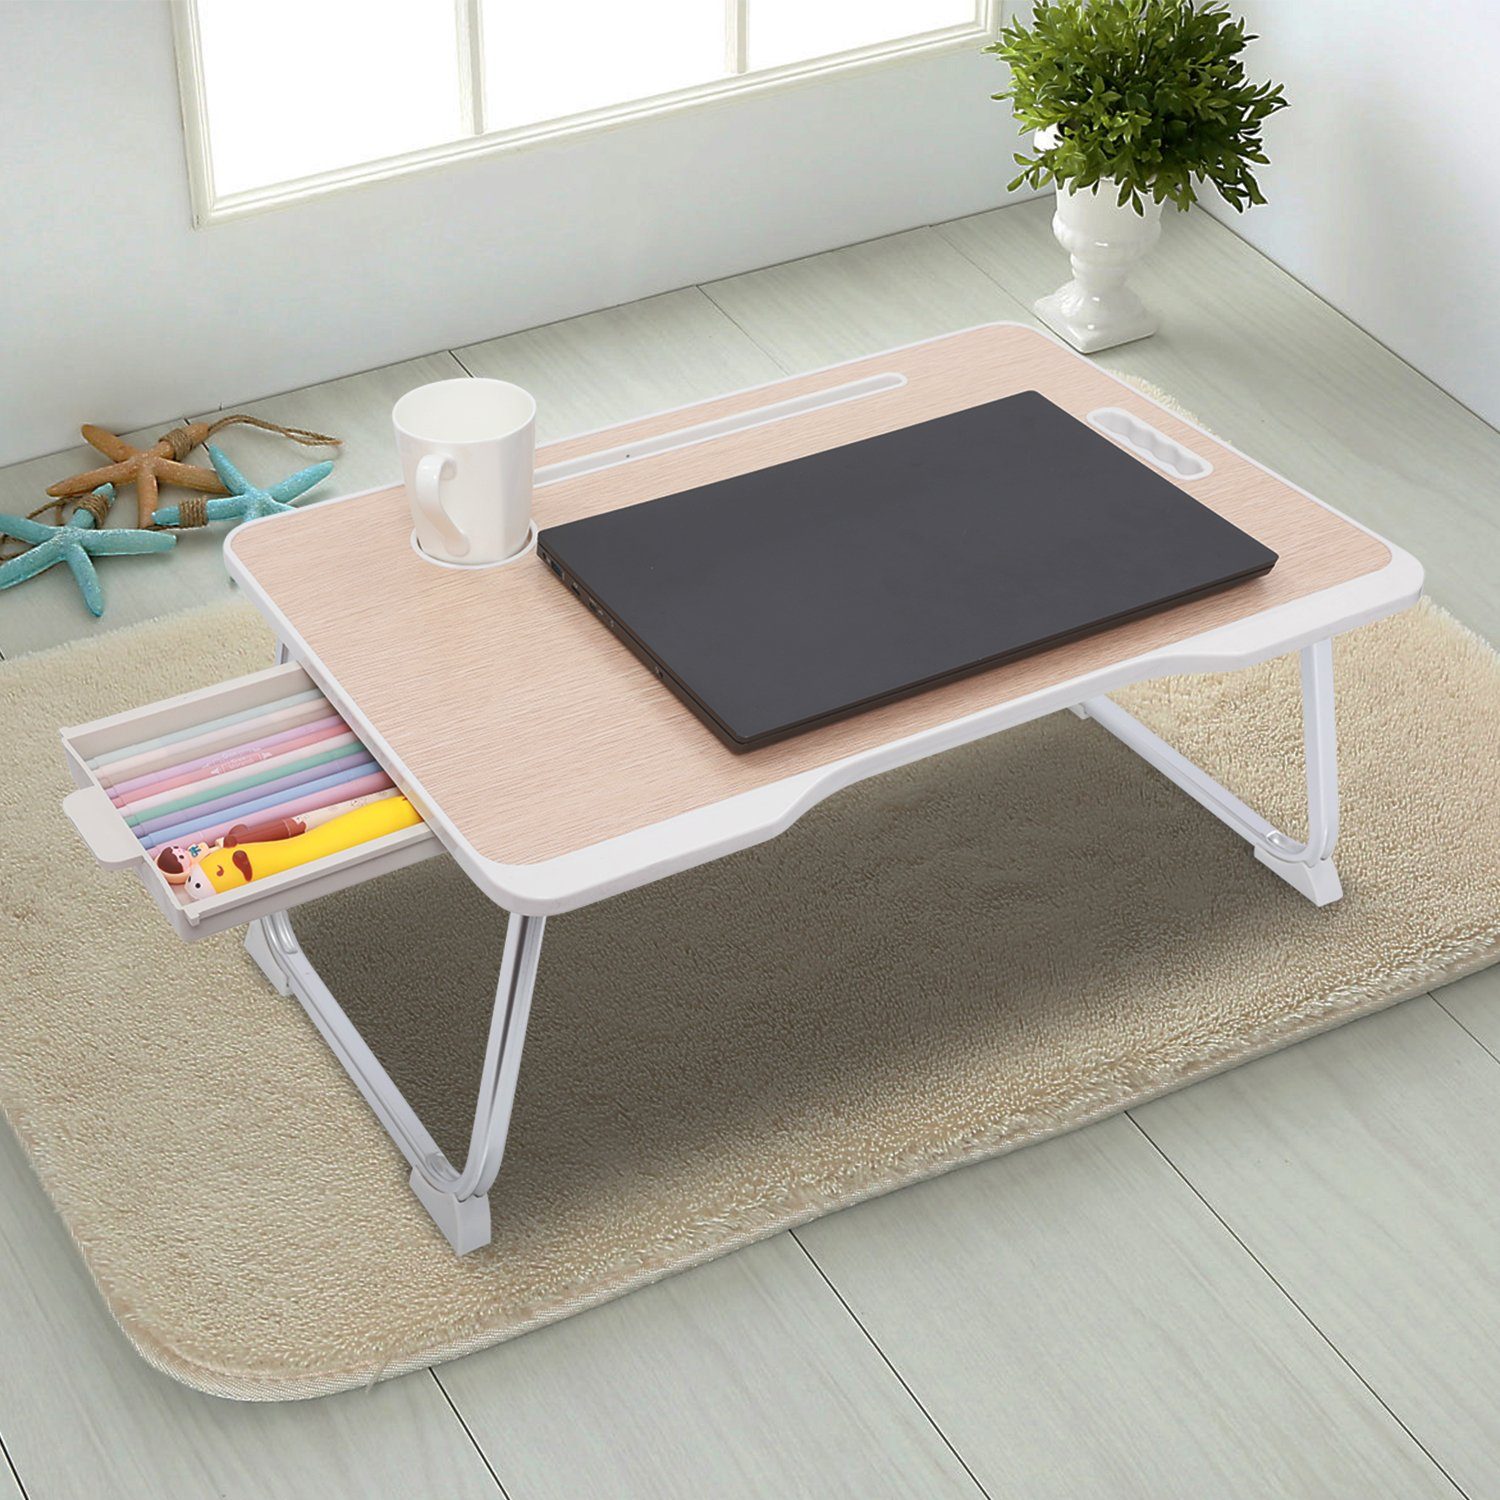 HOBFU einstellbar belüftet Tisch Laptop Schreibtisch tragbar Bett Tablett Buch Ständer Multifuctional & Ergonomie Design Tischplatte 